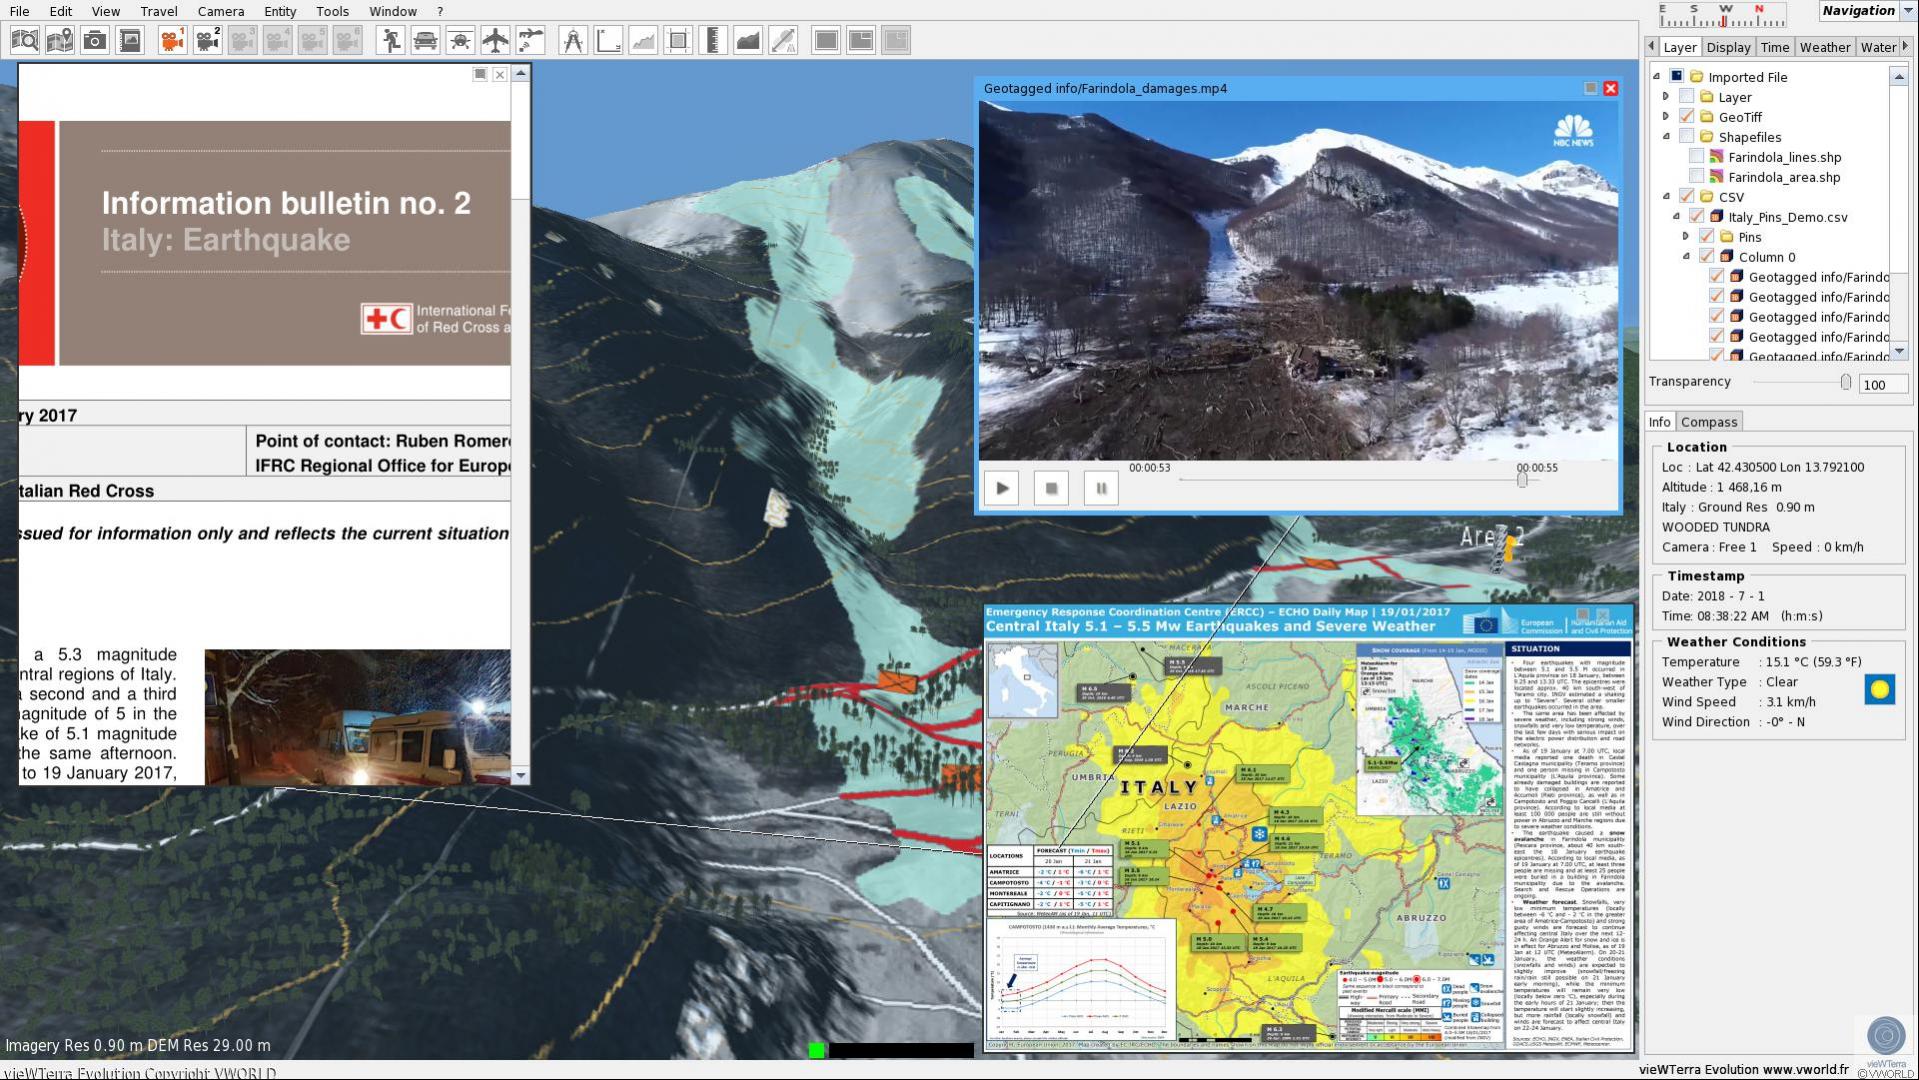 Sistema de visualización de la Tierra en 4D vieWTerra Evolution, una plataforma de desarrollo e integración de datos